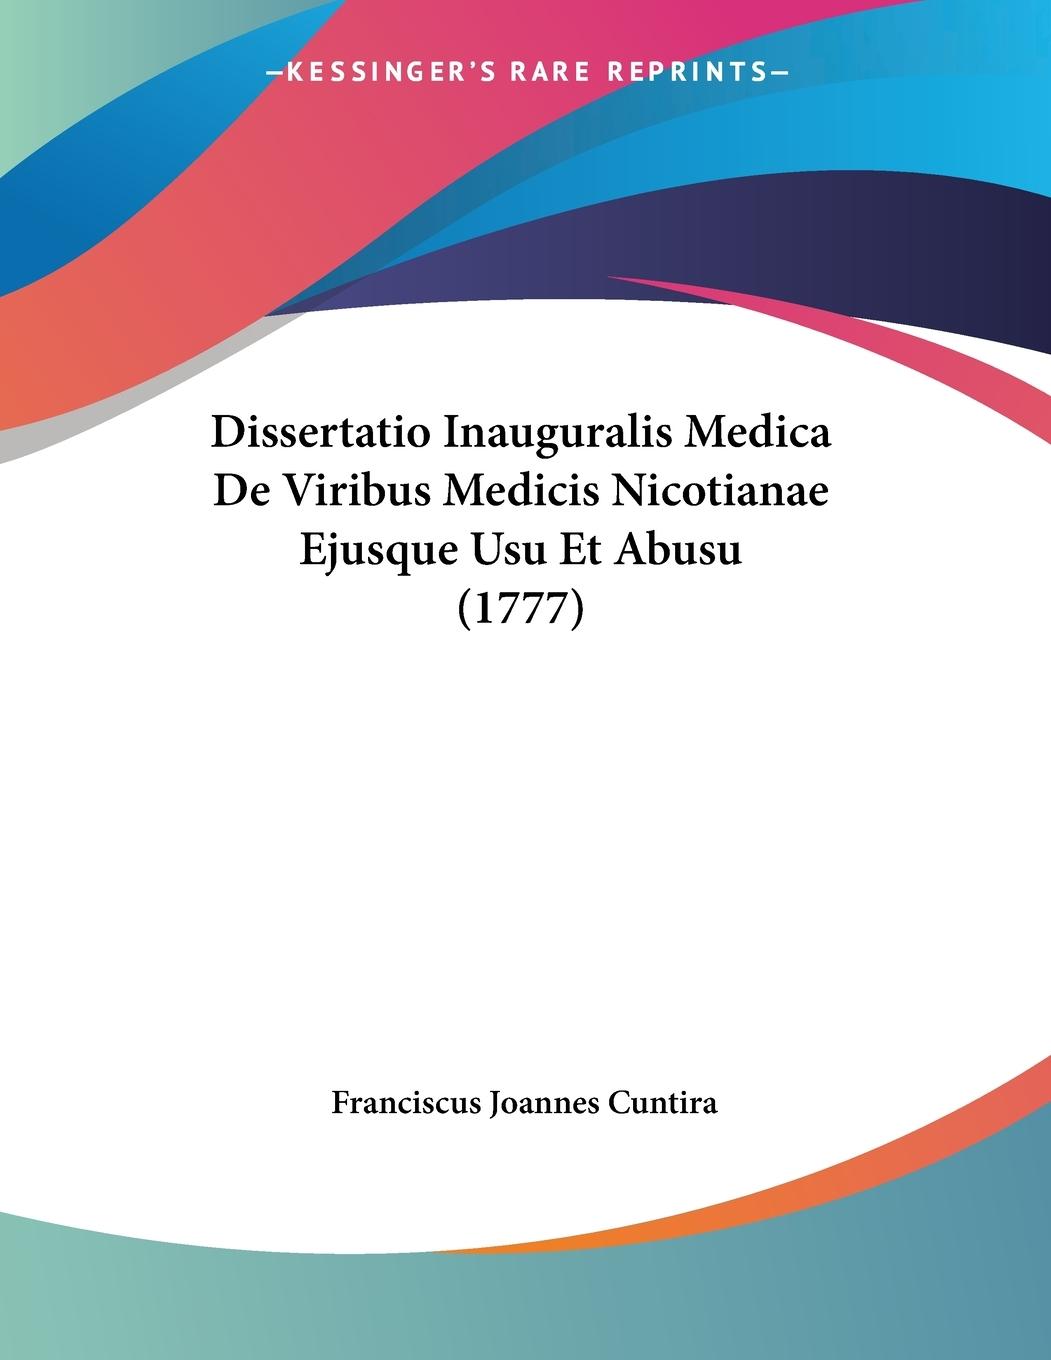 Dissertatio Inauguralis Medica De Viribus Medicis Nicotianae Ejusque Usu Et Abusu (1777) - Cuntira, Franciscus Joannes